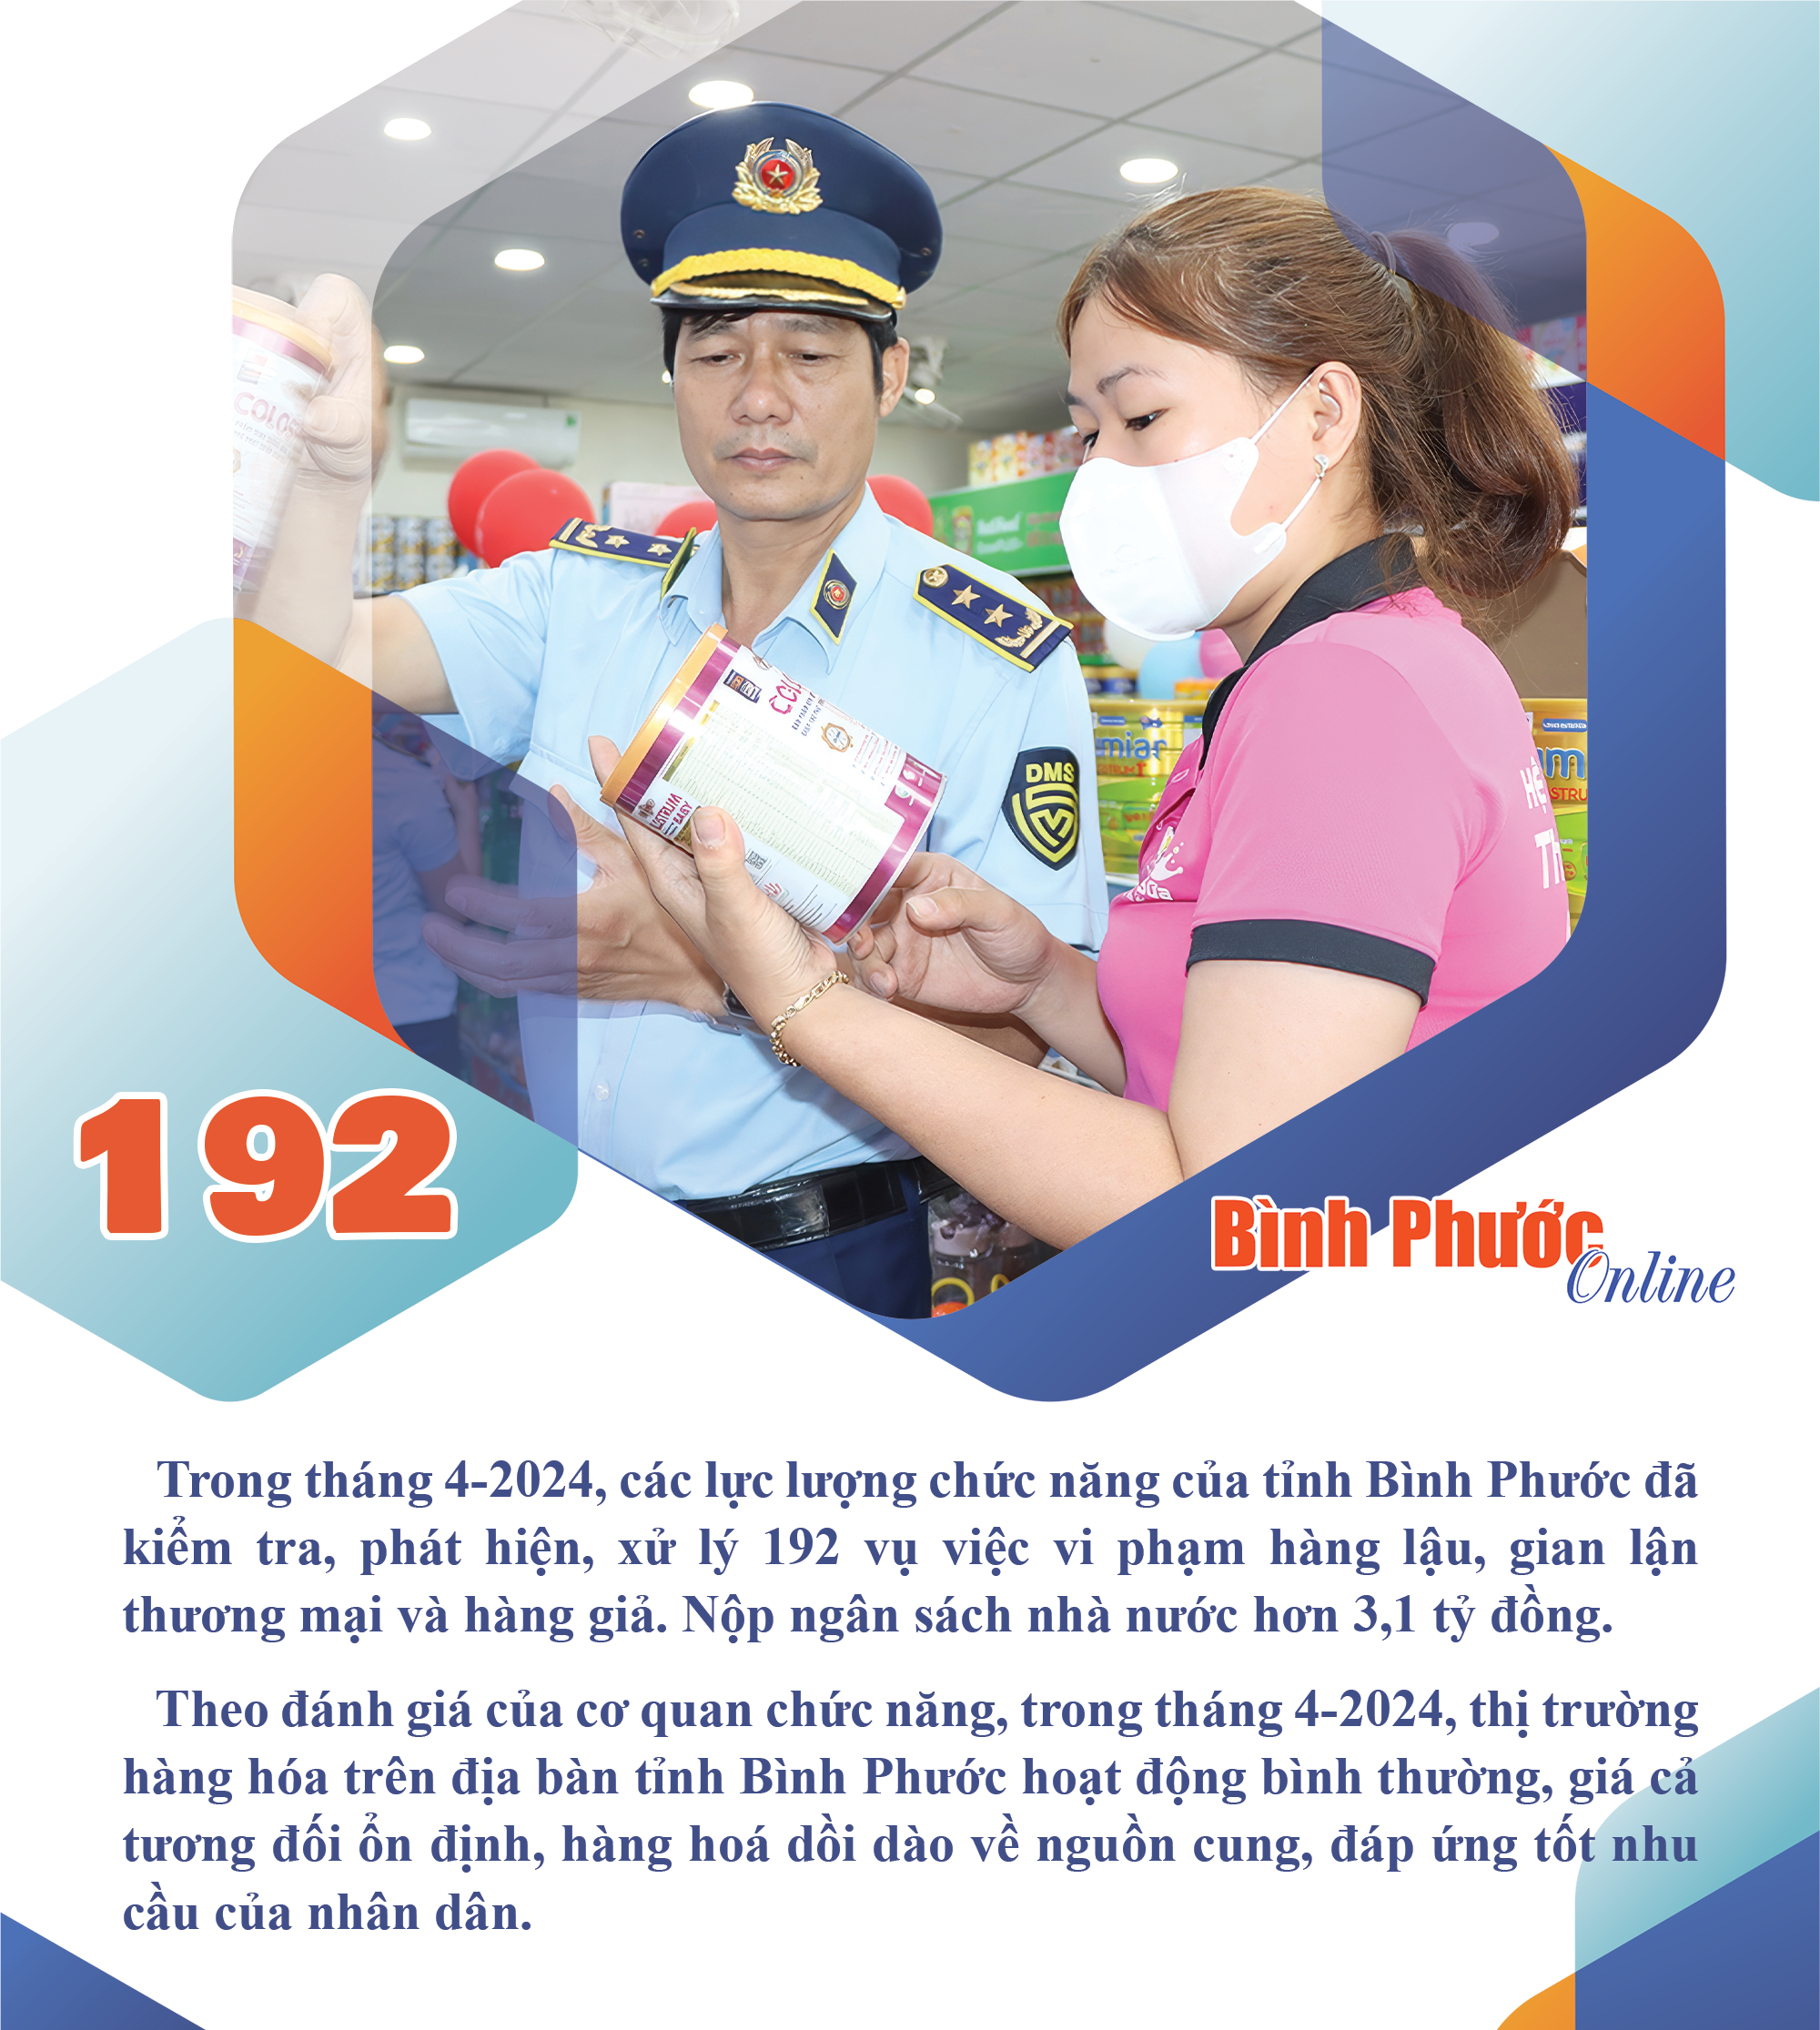 Tháng 4-2024, Bình Phước phát hiện, xử lý 192 vụ vi phạm hàng lậu, gian lận thương mai và hàng giả